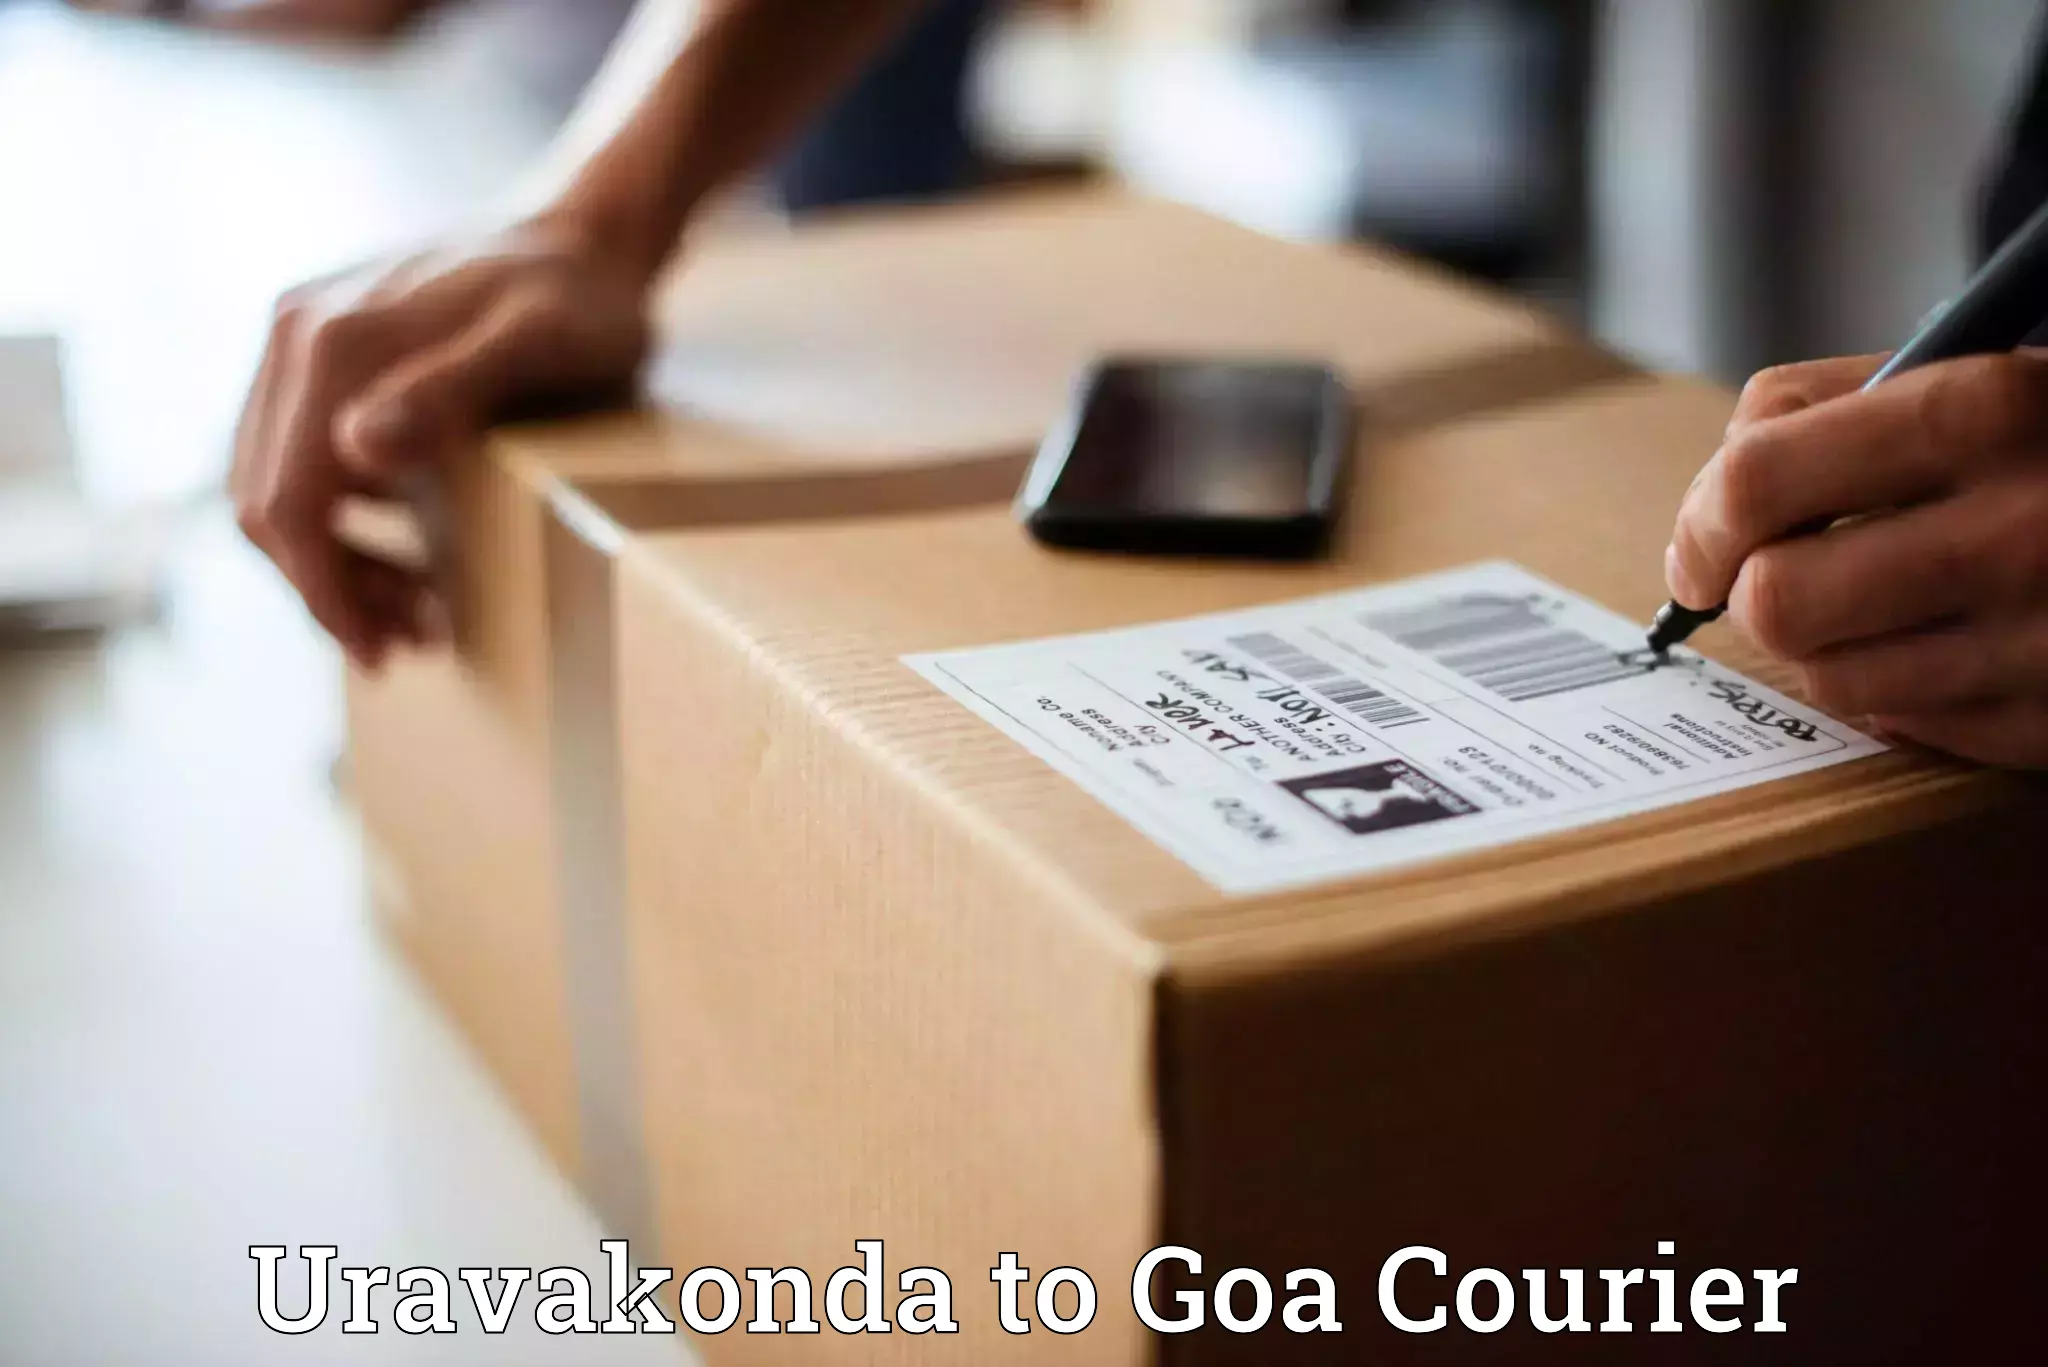 Local delivery service Uravakonda to Panaji